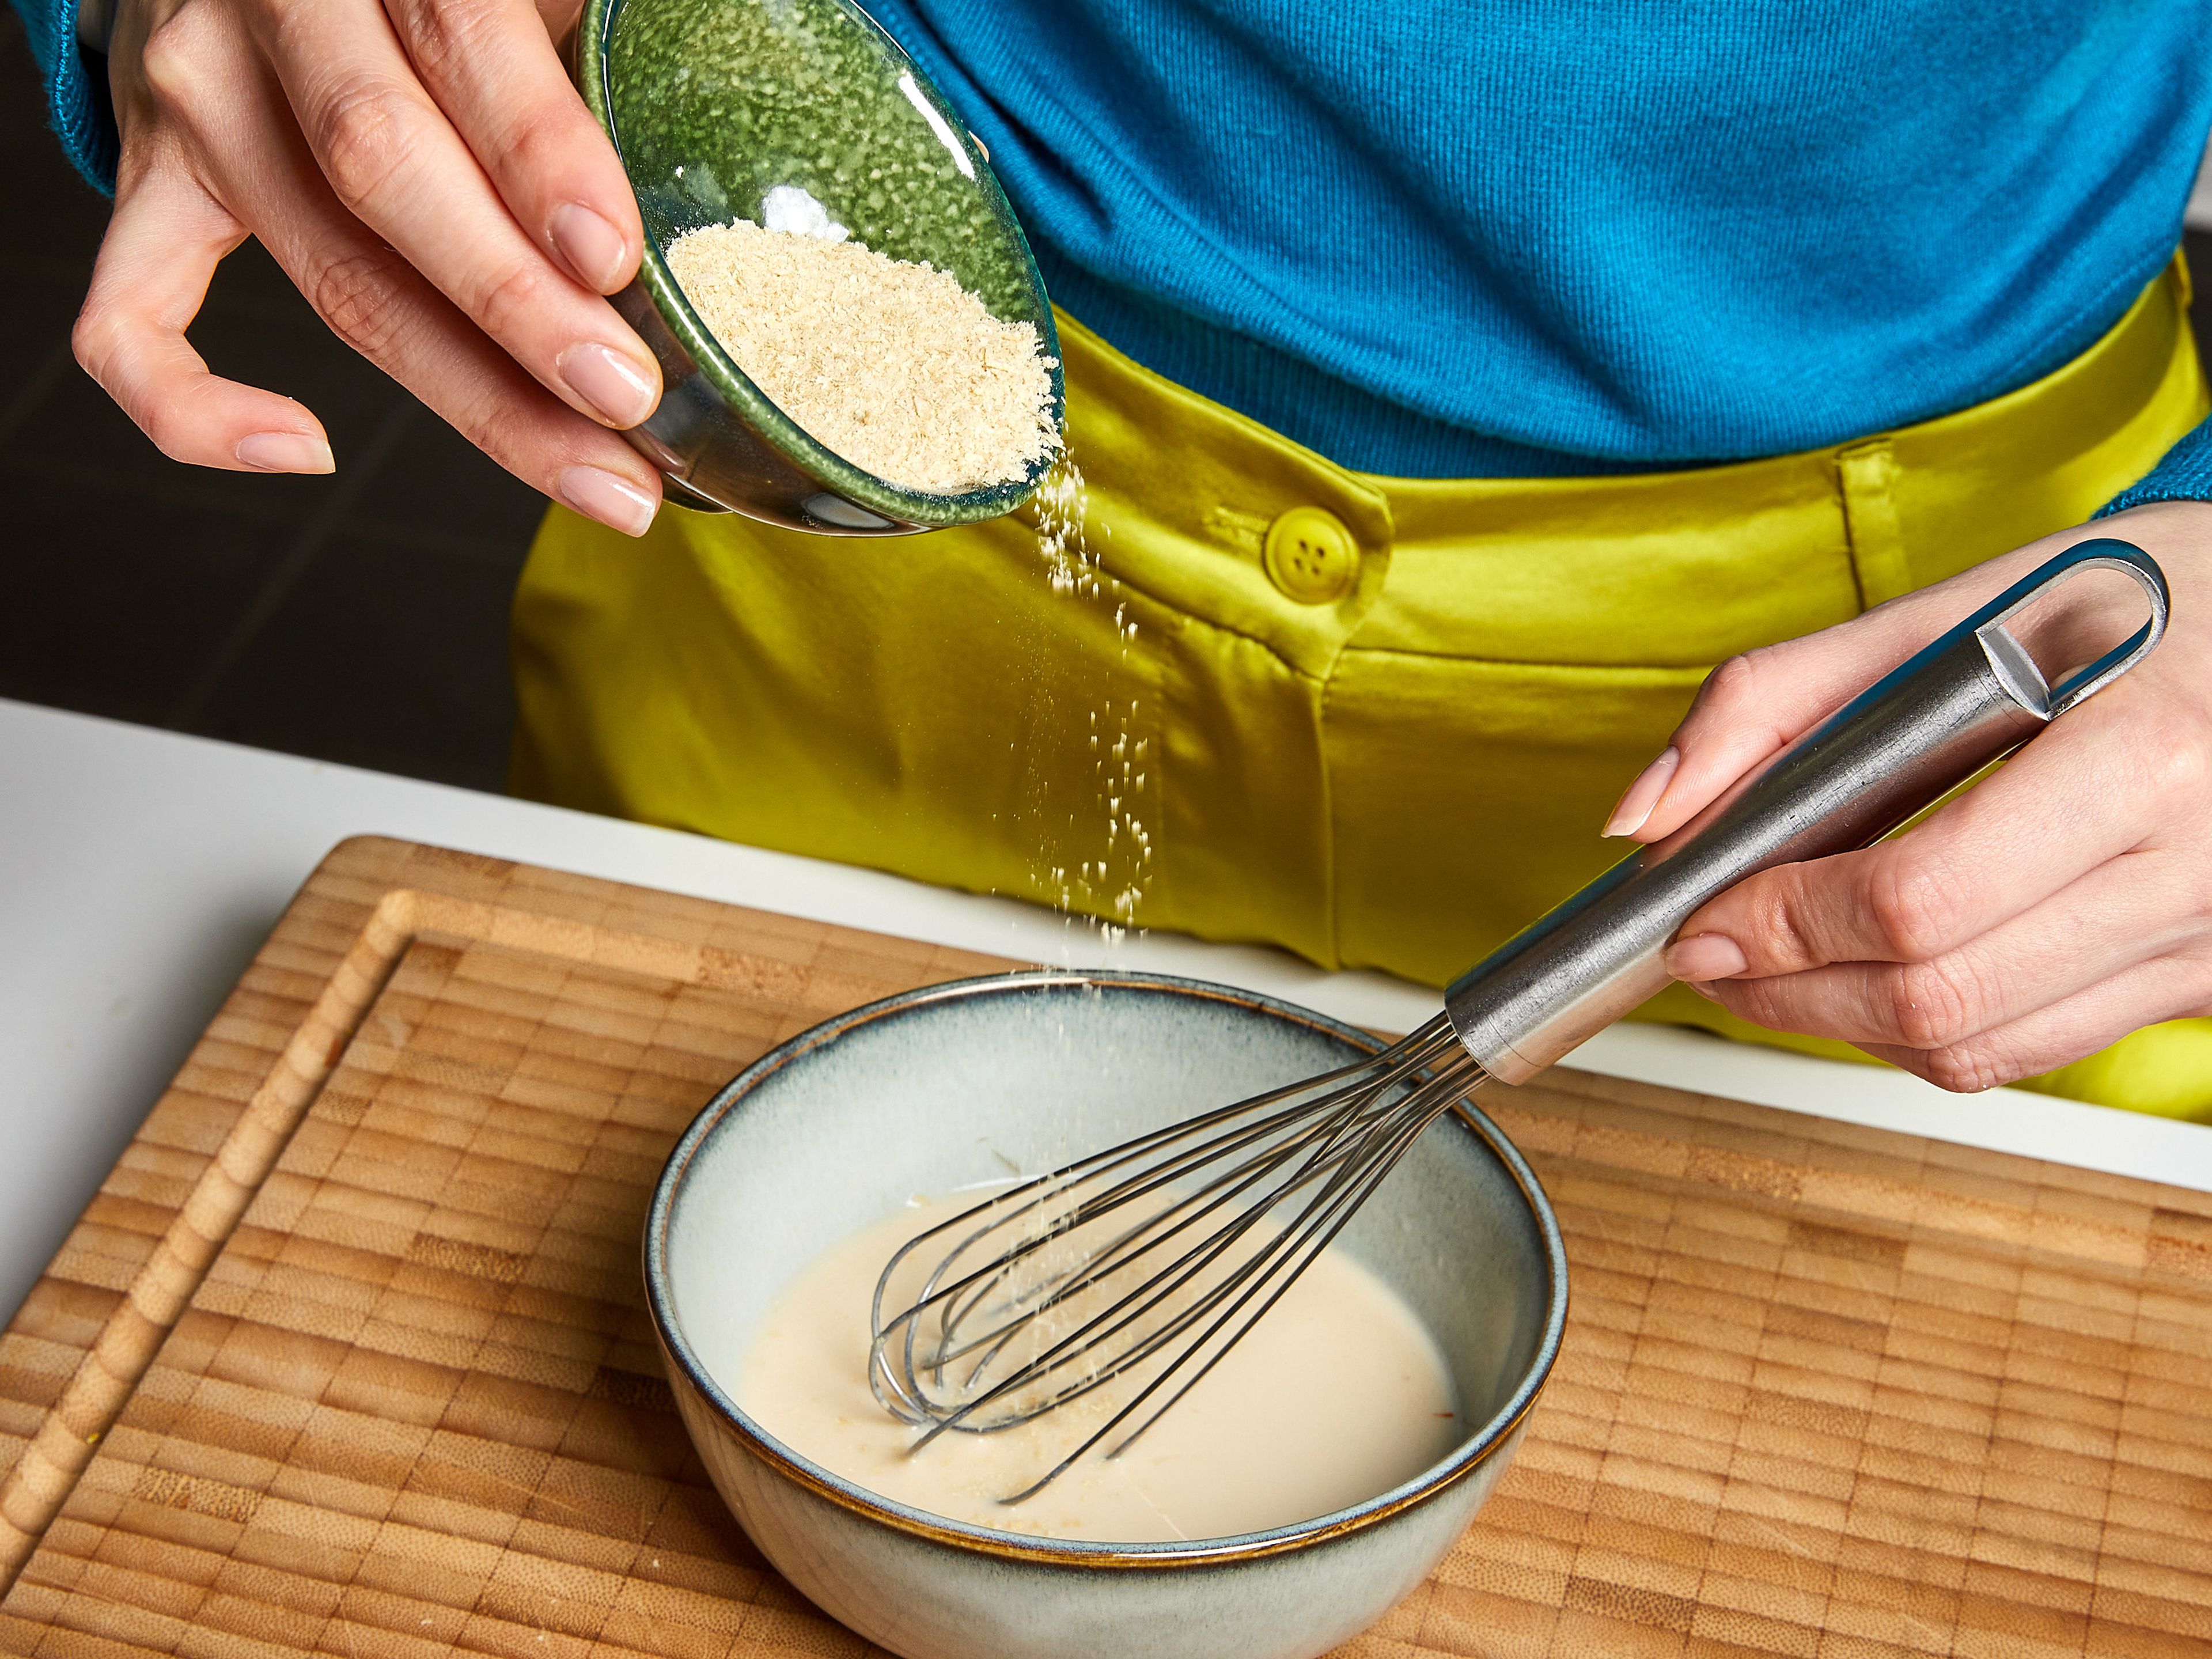 Während die Zwiebeln karamellisieren, den Knoblauch fein hacken. Die Zitrone abreiben und auspressen. In einer kleinen Schüssel den Zitronensaft mit der pflanzlichen Milch und den Hefeflocken vermischen, gut verrühren und beiseitestellen.